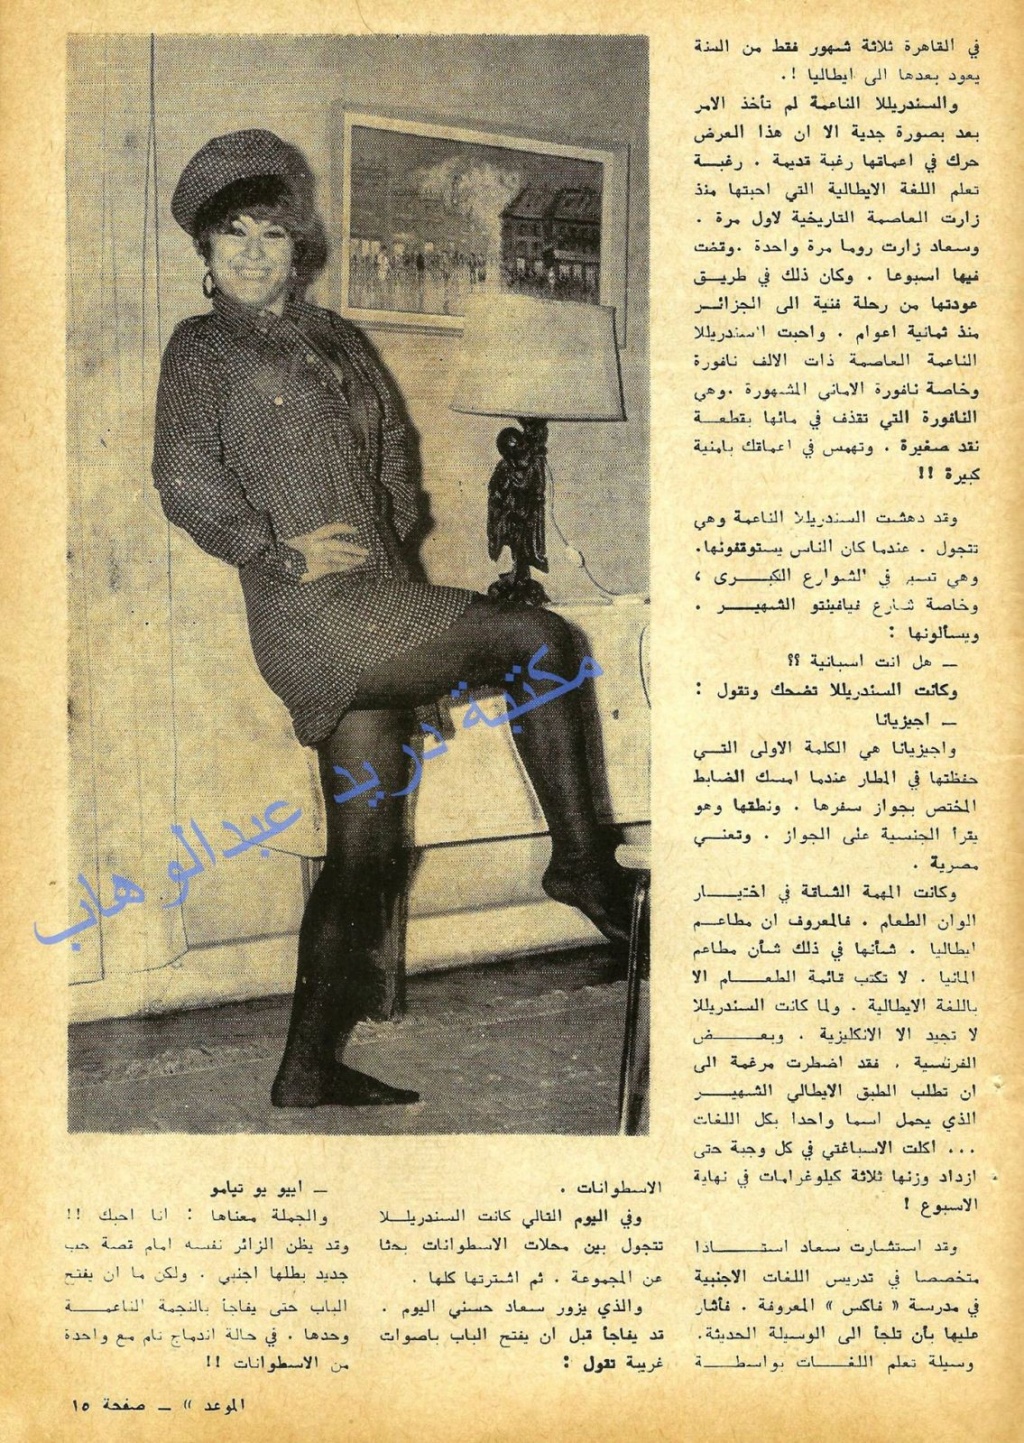 1968 - مقال صحفي : سعاد حسني تتعلم اللغة الايطالية بالسر لتبدأ غزوهَا للسينما الأوروبيَة ! 1968 م 535